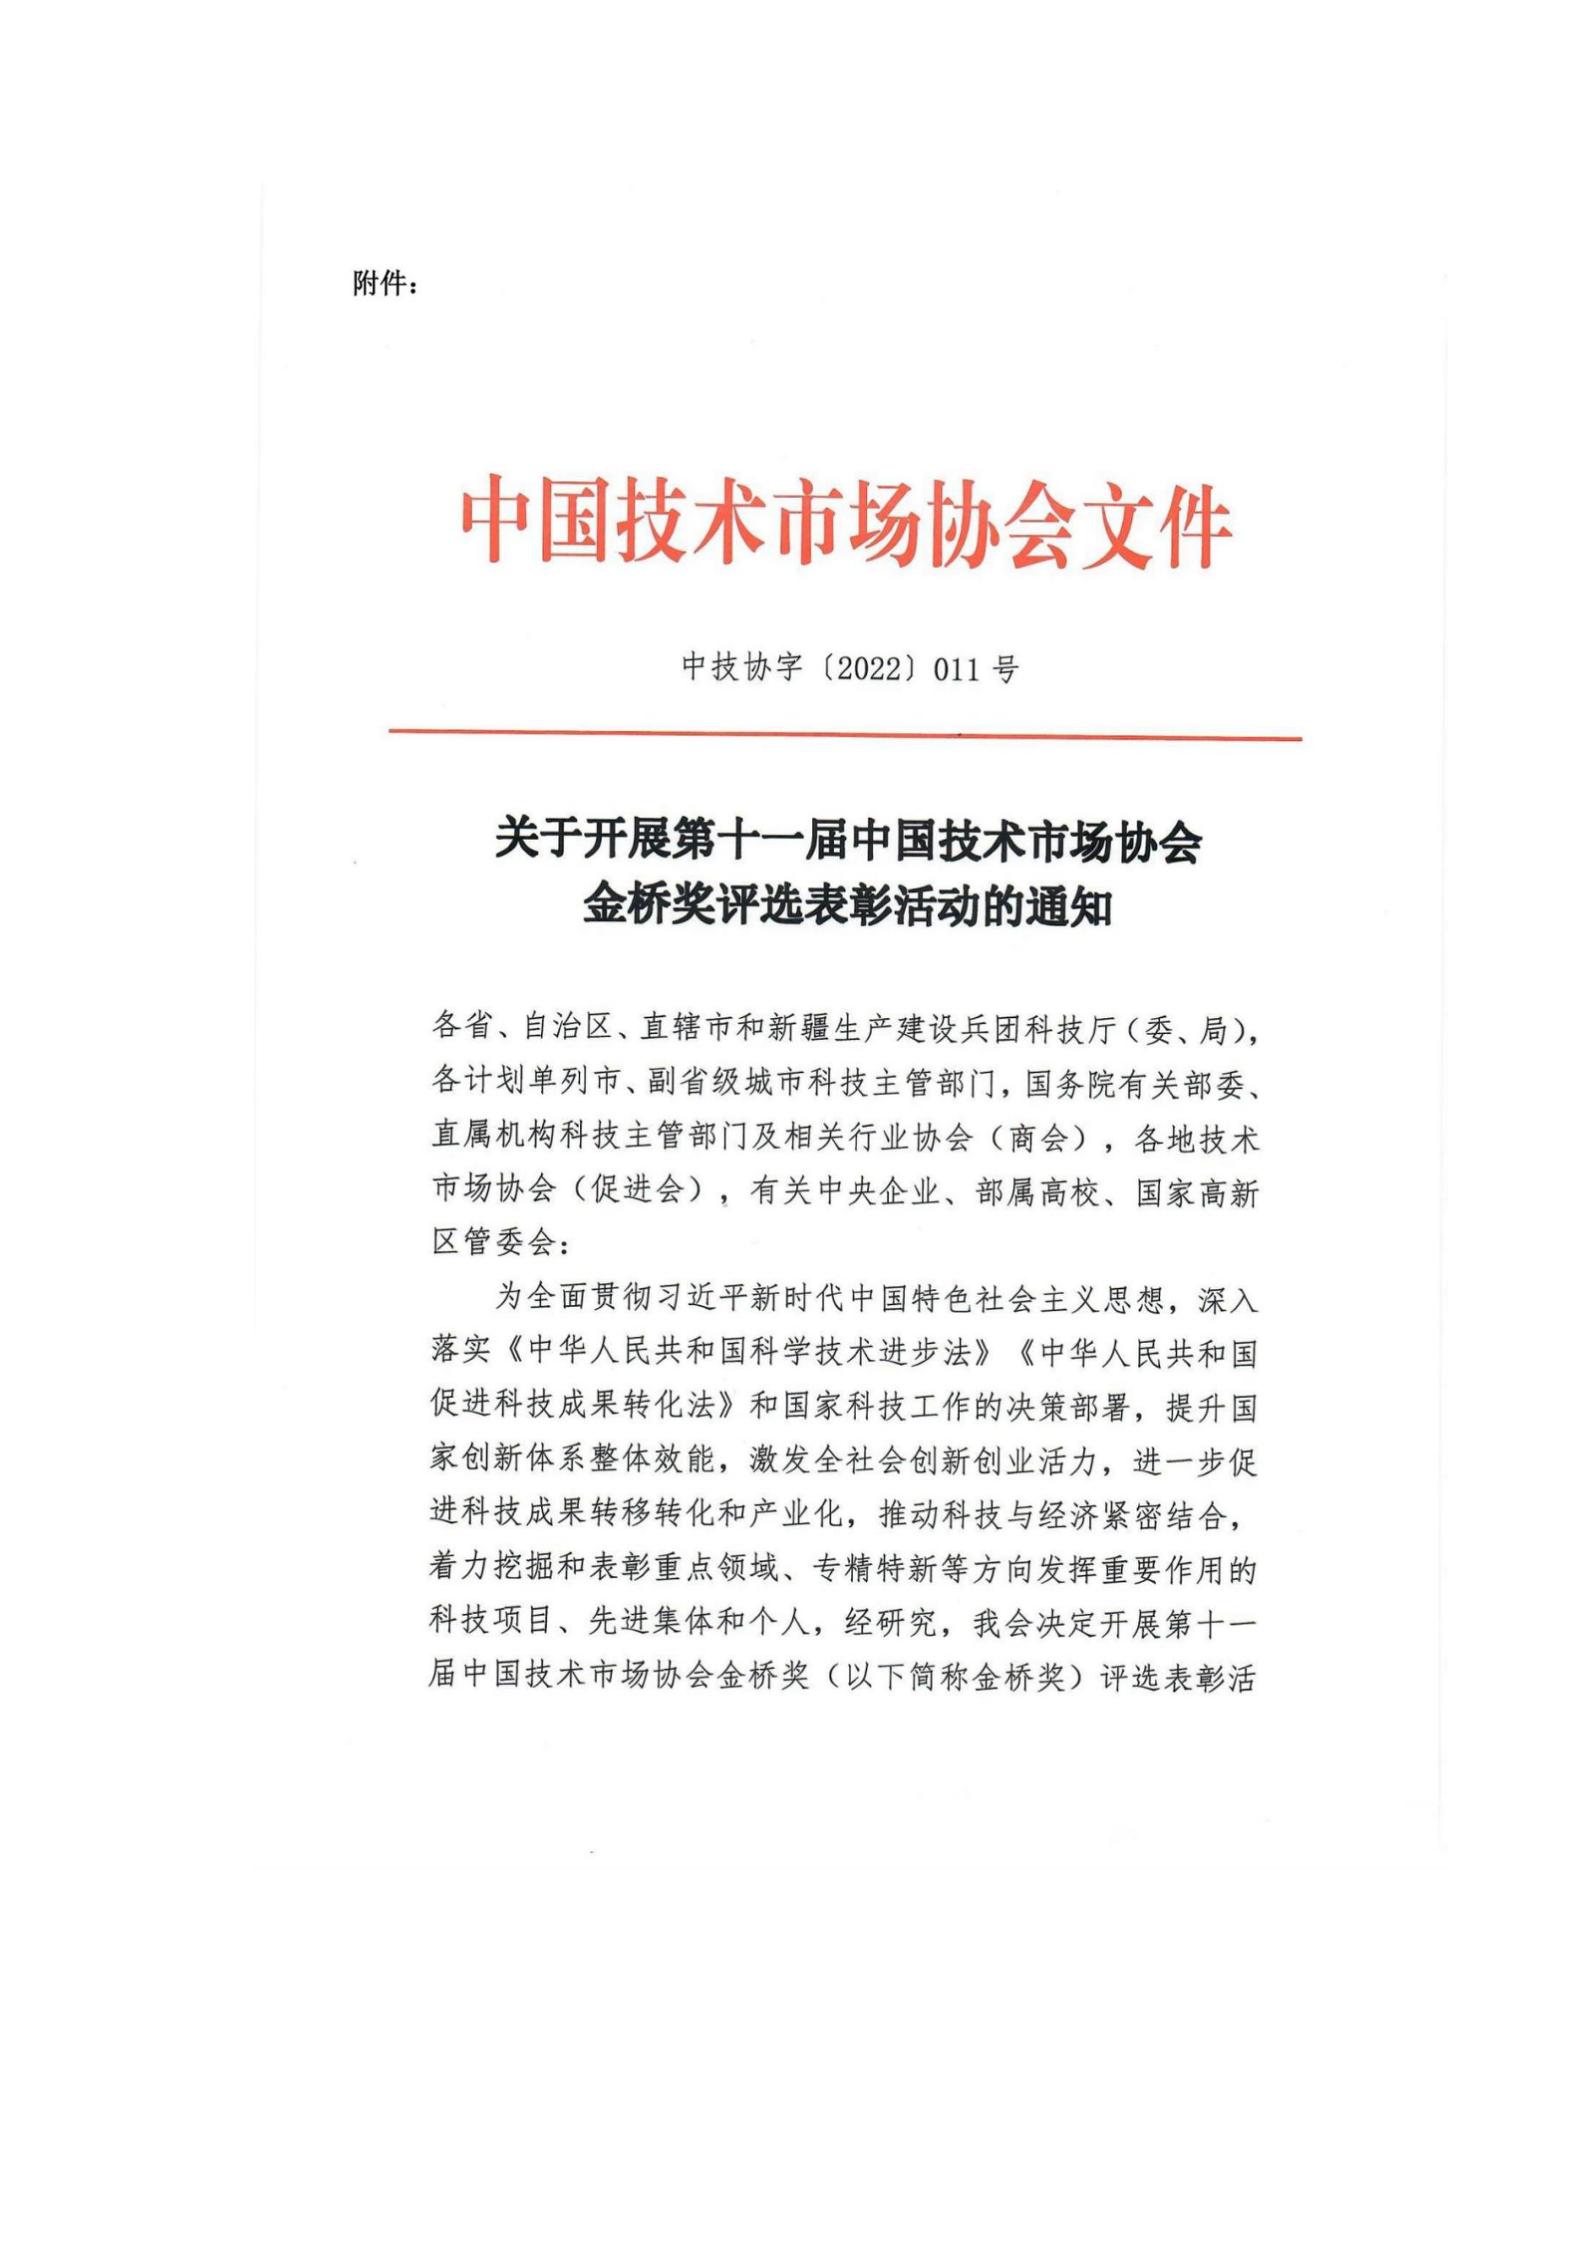 关于组织申报第十一届中国技术市场协会金桥奖表彰奖励的通知_03.jpg